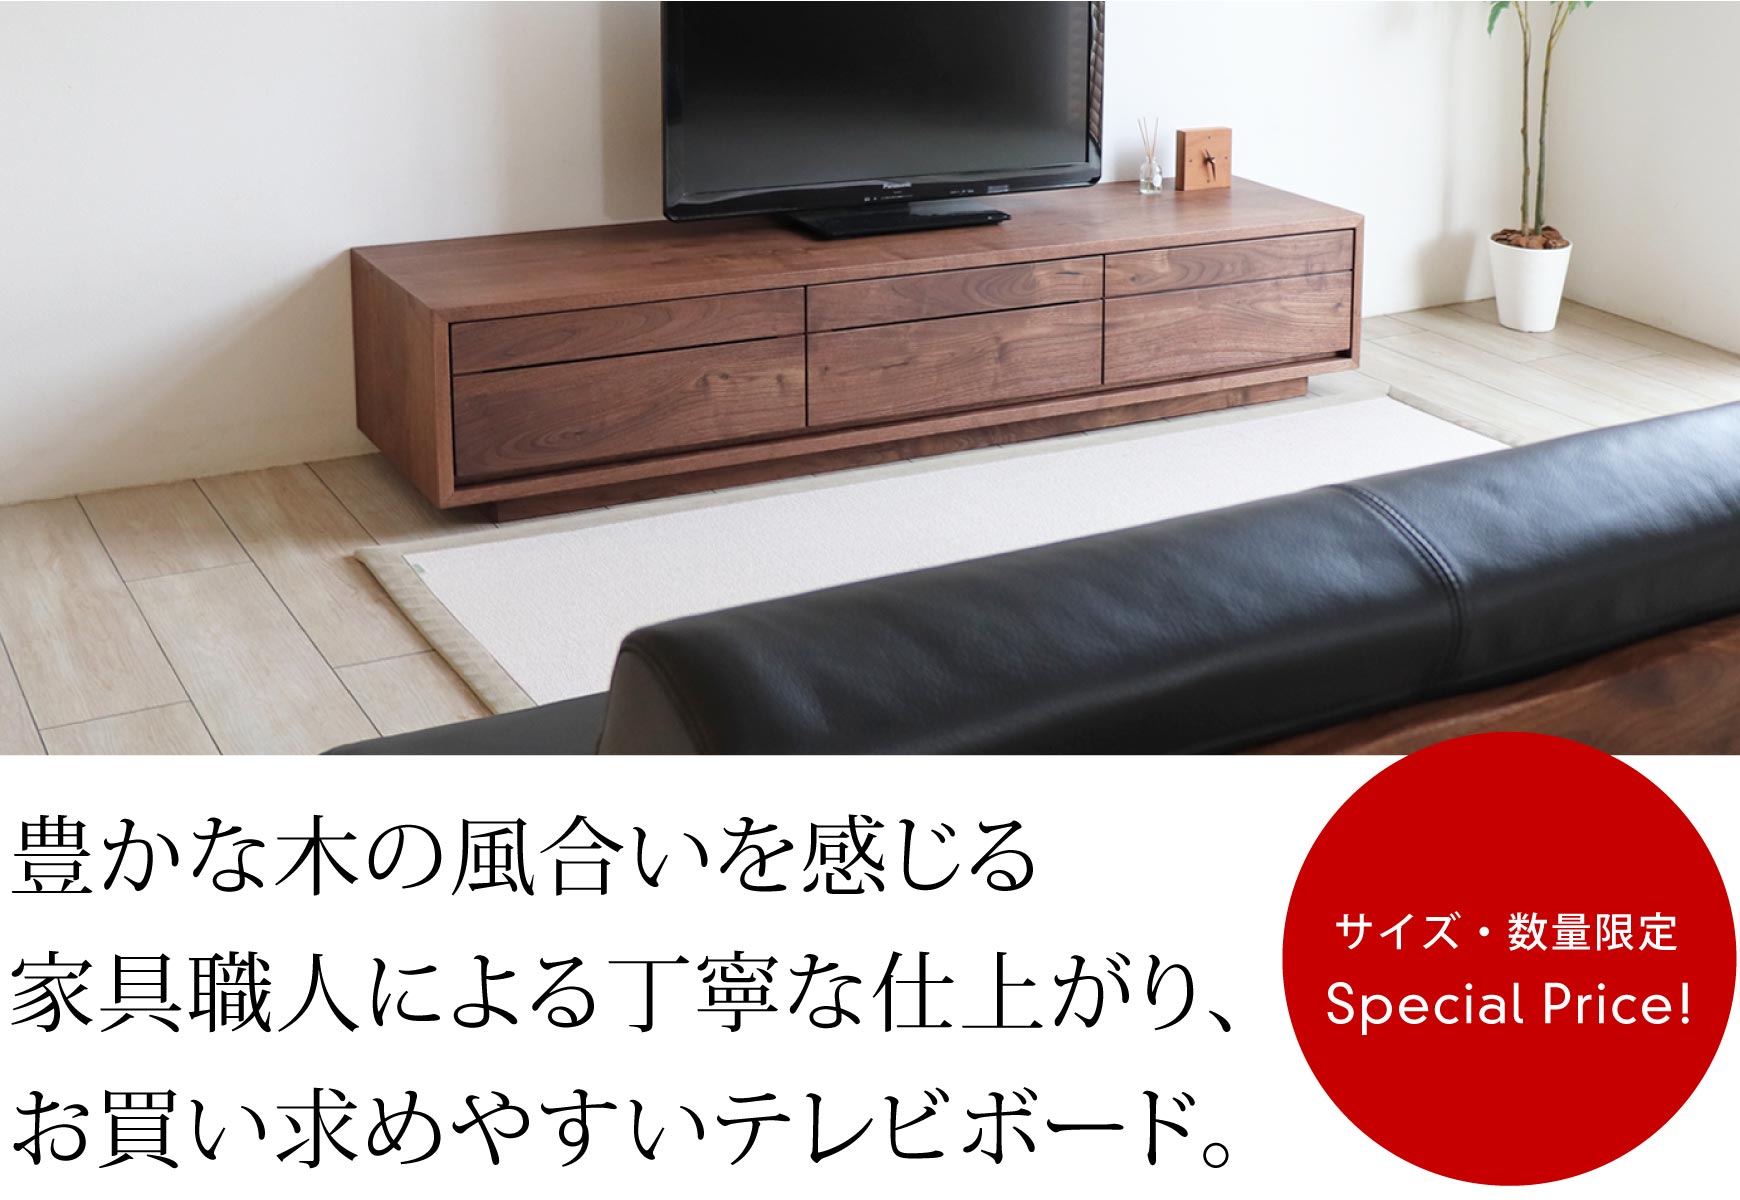 家具職人による丁寧な仕上がり、お買い求めやすいテレビボード